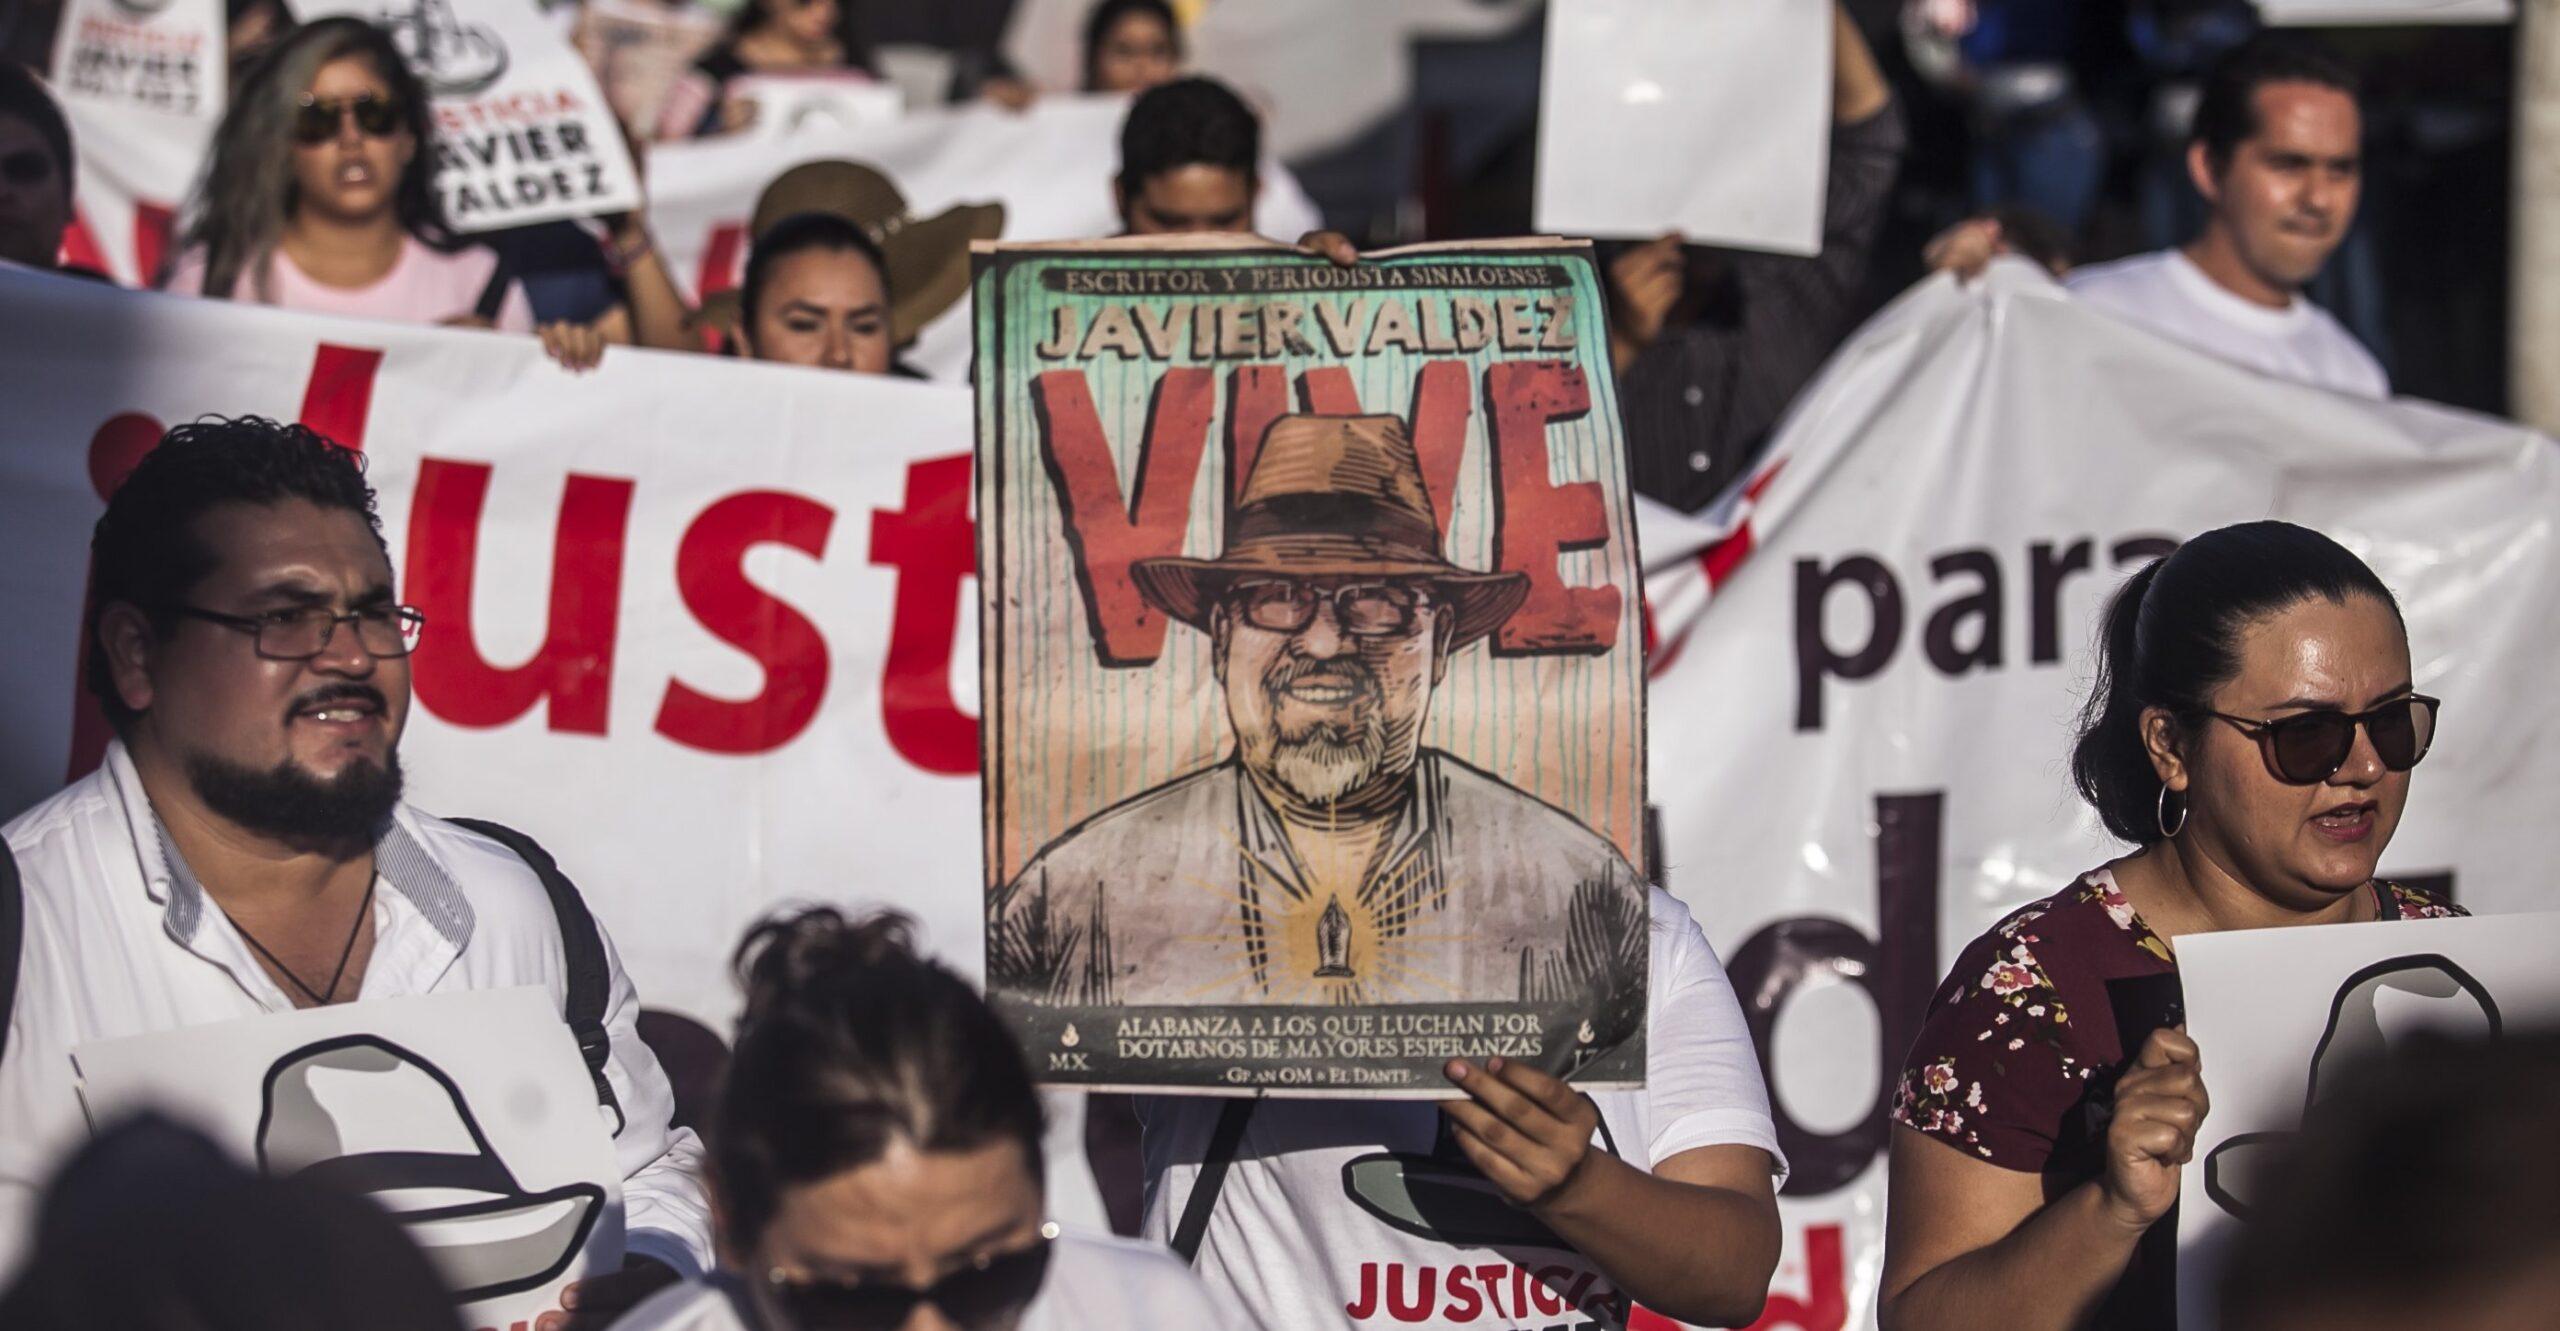 PGR pide a juez federal pena máxima para uno de los presuntos asesinos de Javier Valdez